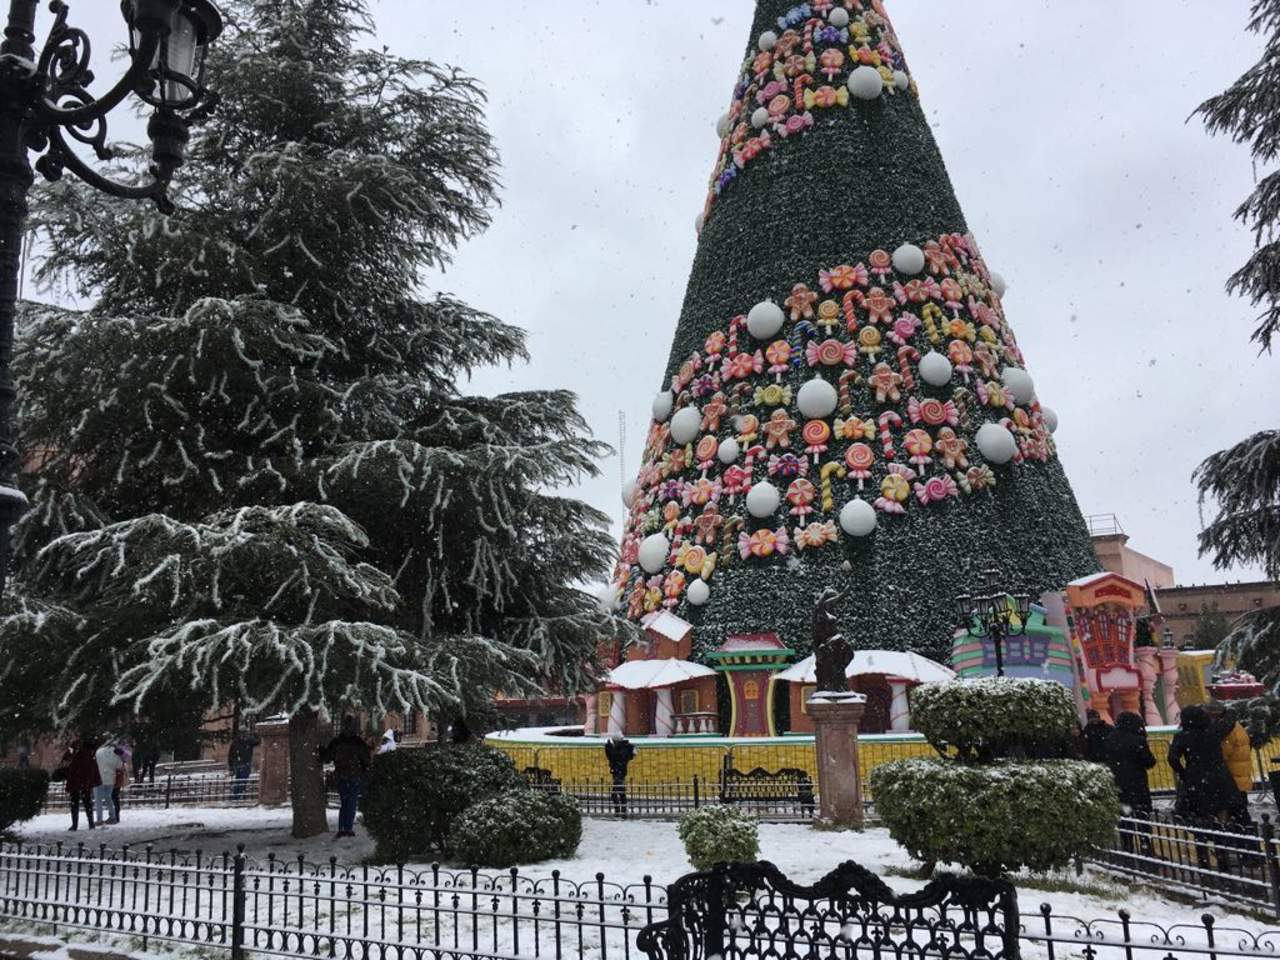 En la Plaza de Armas familias acudieron a tomarse fotografías junto al árbol de navidad y la decoración decembrina que se encontraba cubiertas de nieve. (LUCÍA PÉREZ)